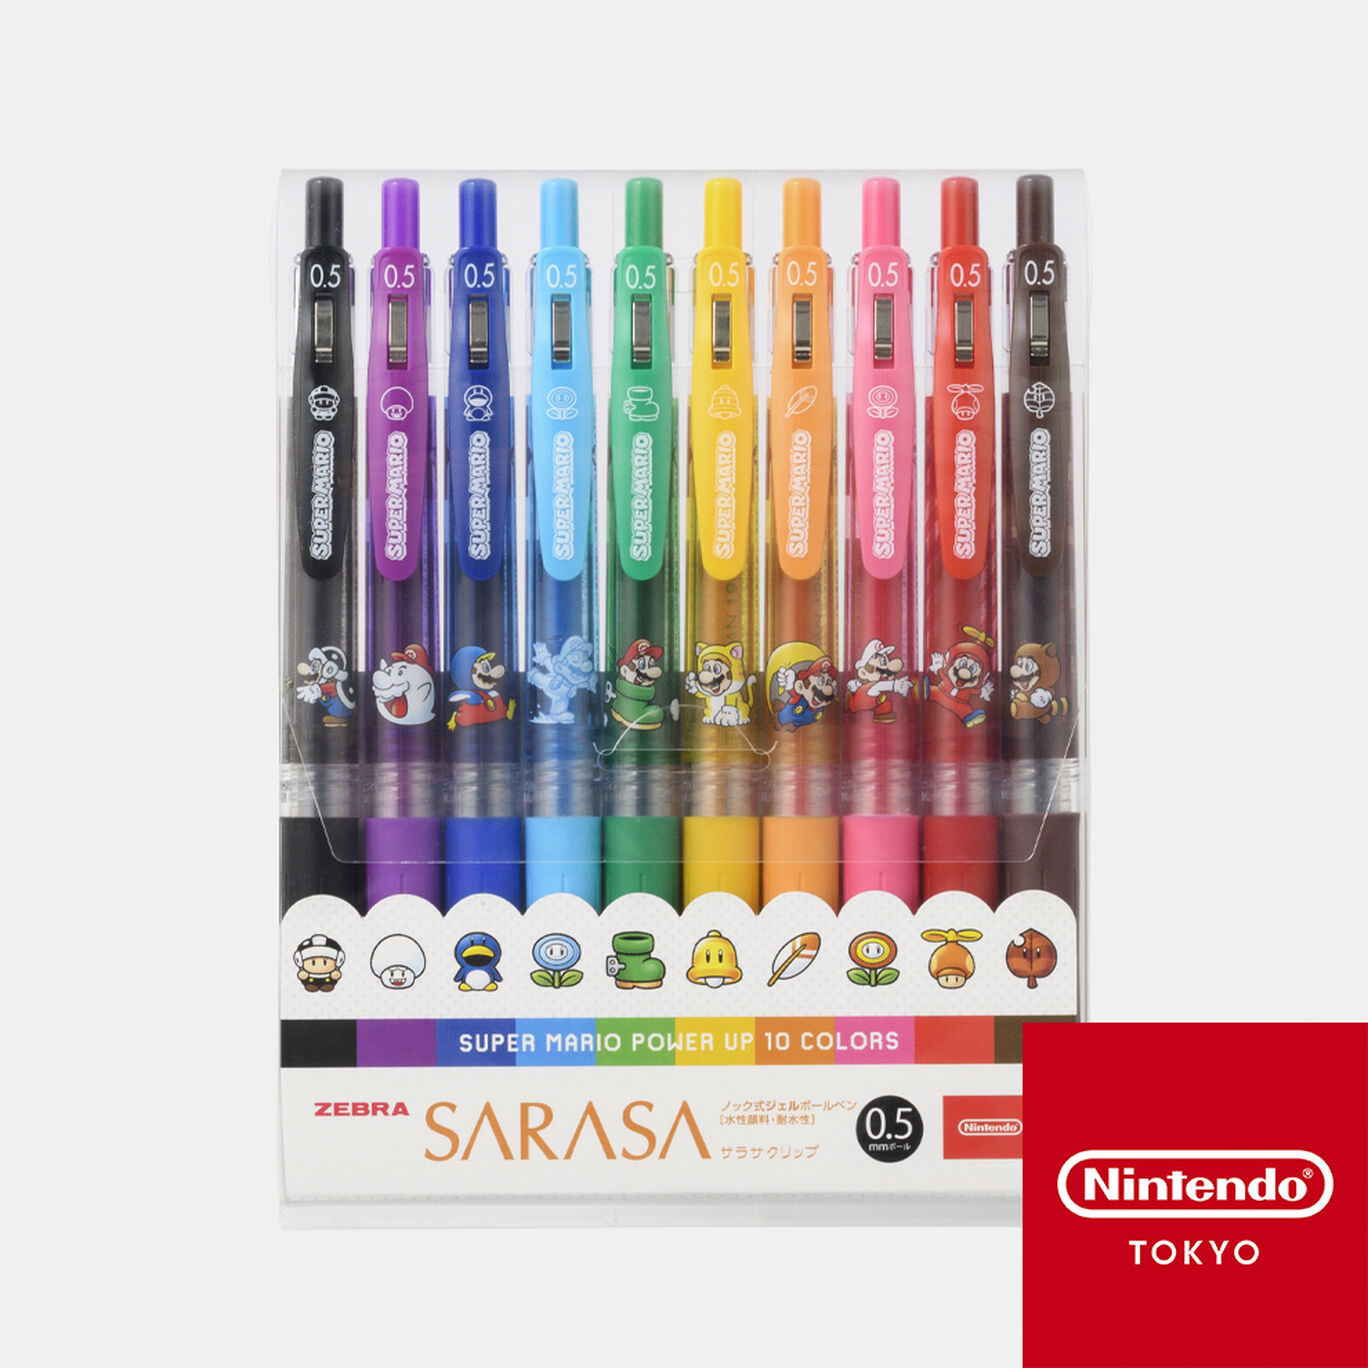 SARASAクリップ 10本セット スーパーマリオ パワーアップ【Nintendo TOKYO取り扱い商品】